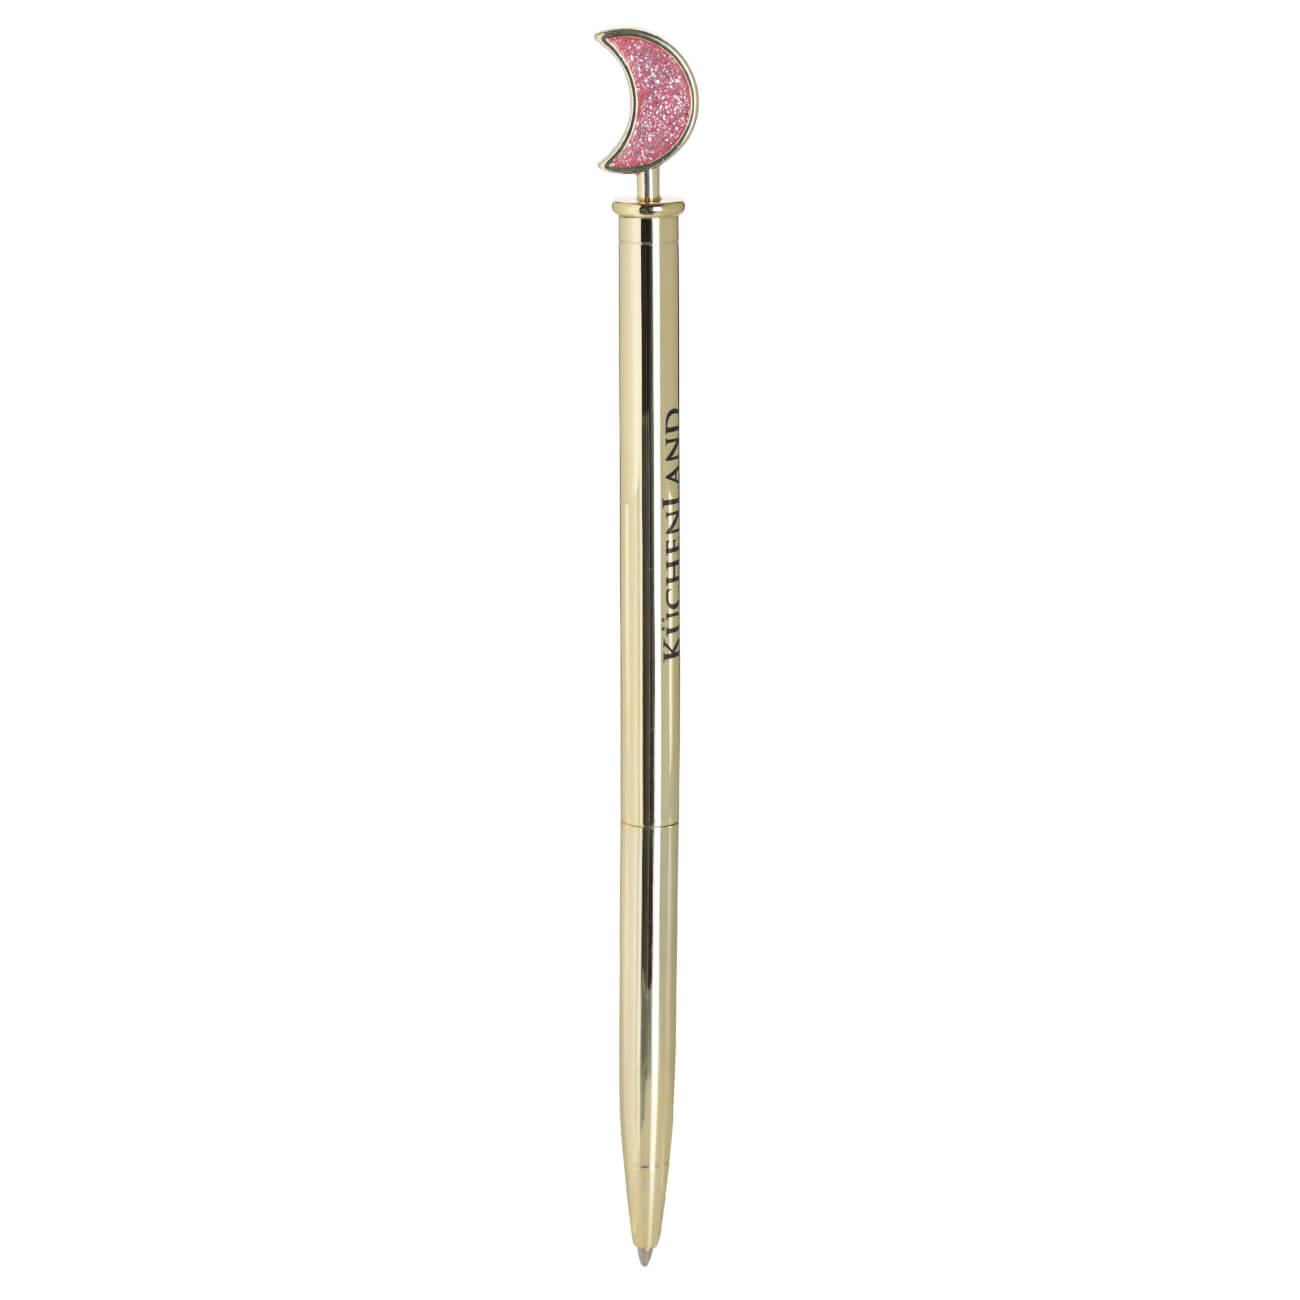 Ручка шариковая, 15 см, с фигуркой, металл, золотистая, Луна, Draw figure ручка шариковая 13 см с кристаллом металл серебристая draw